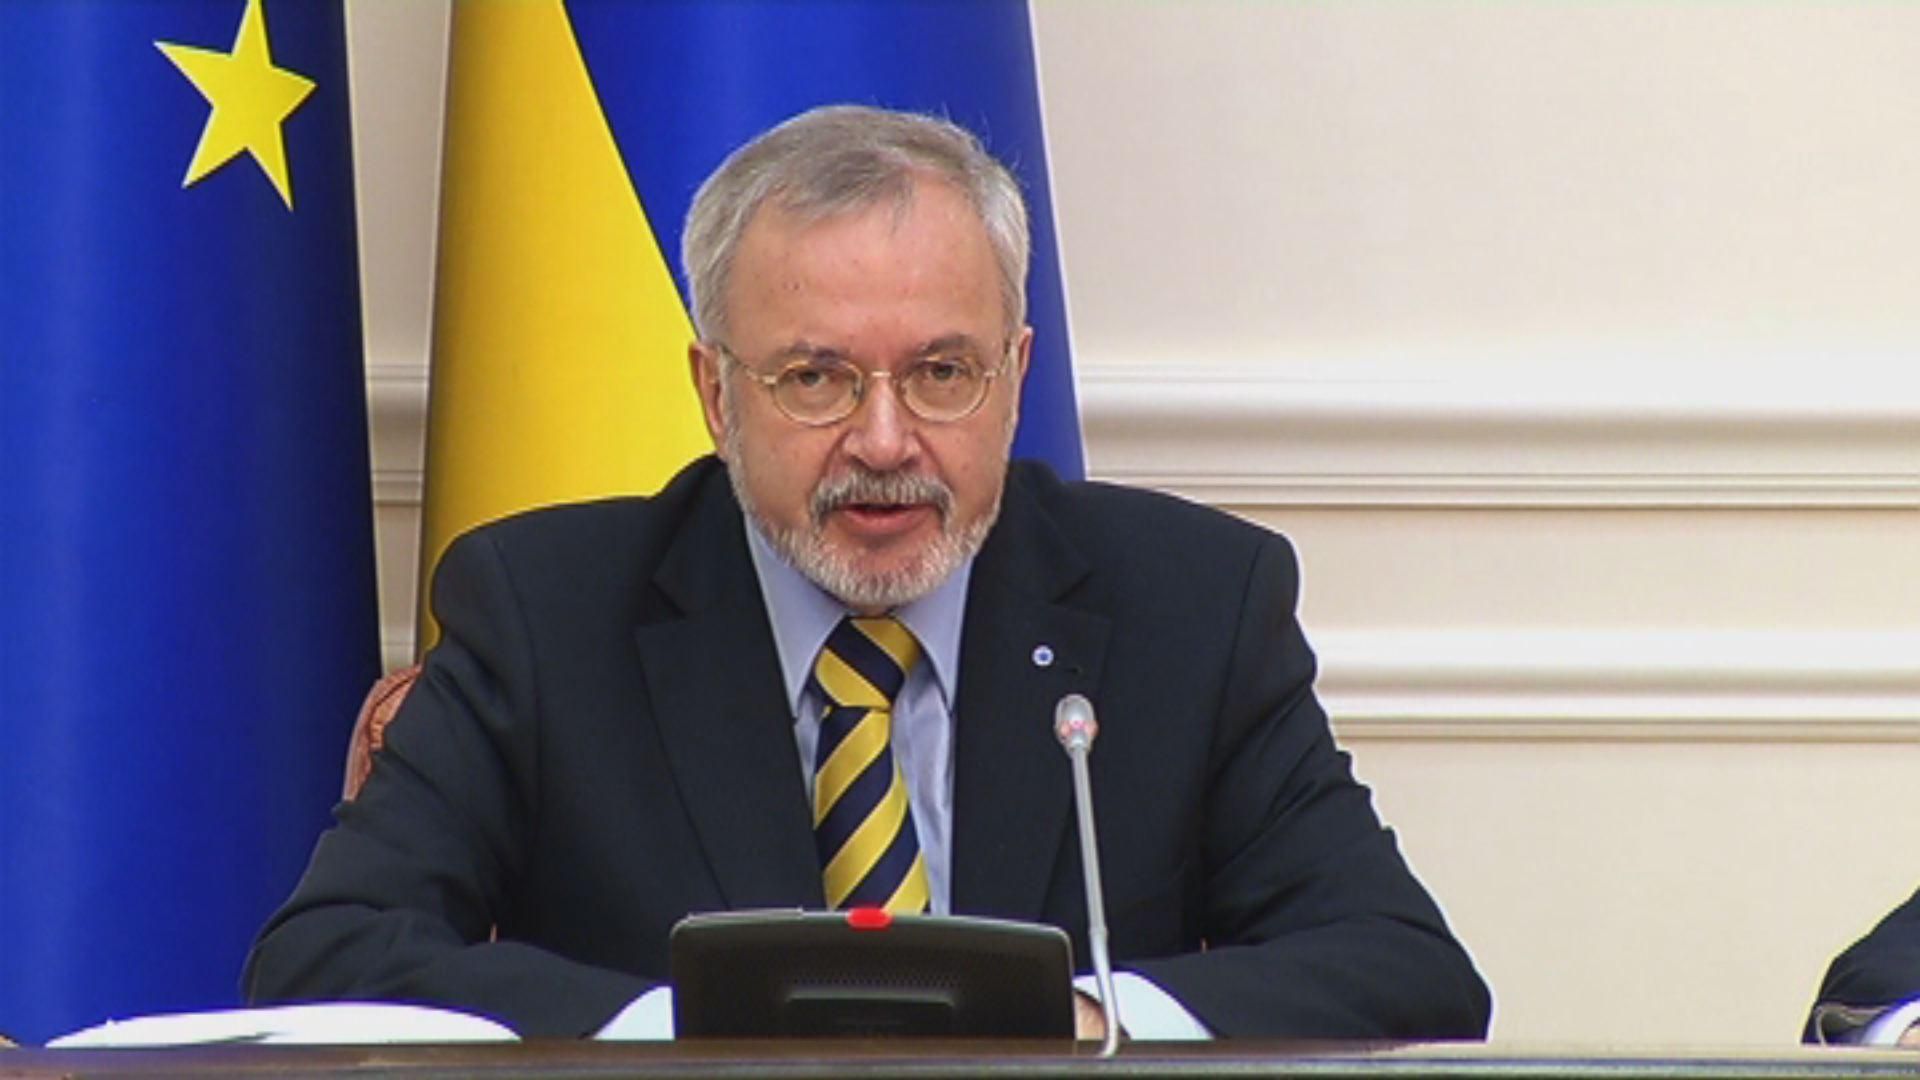 Цель проекта ЕИБ — модернизировать украинскую газотранспортную систему, — президент ЕИБ